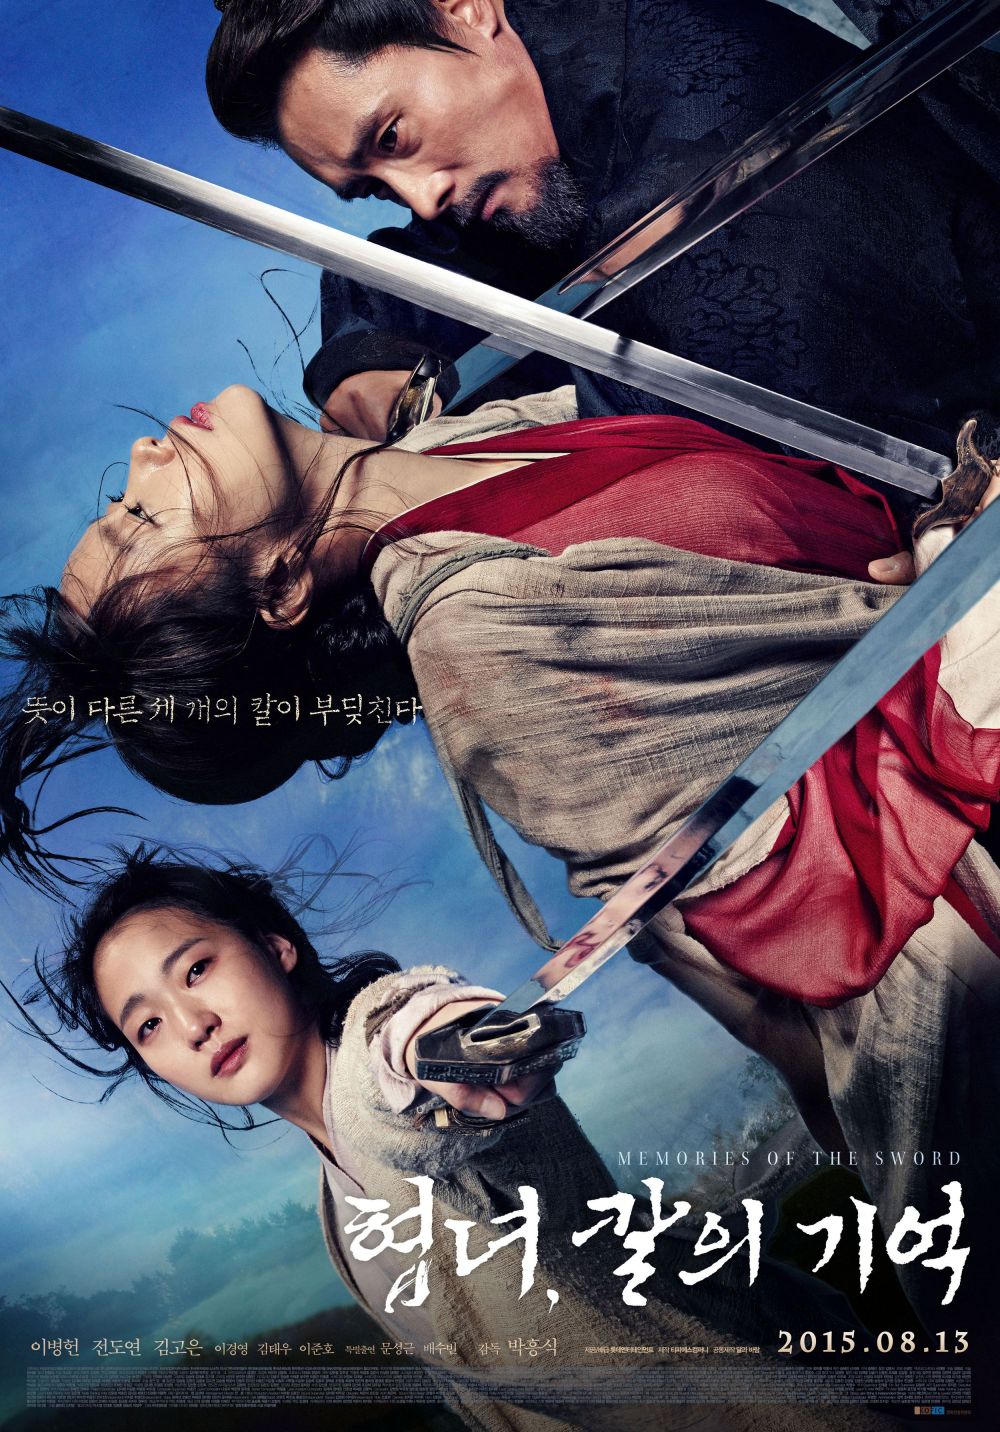 20 Film Korea terbaik romantis, tak membosankan ditonton ulang